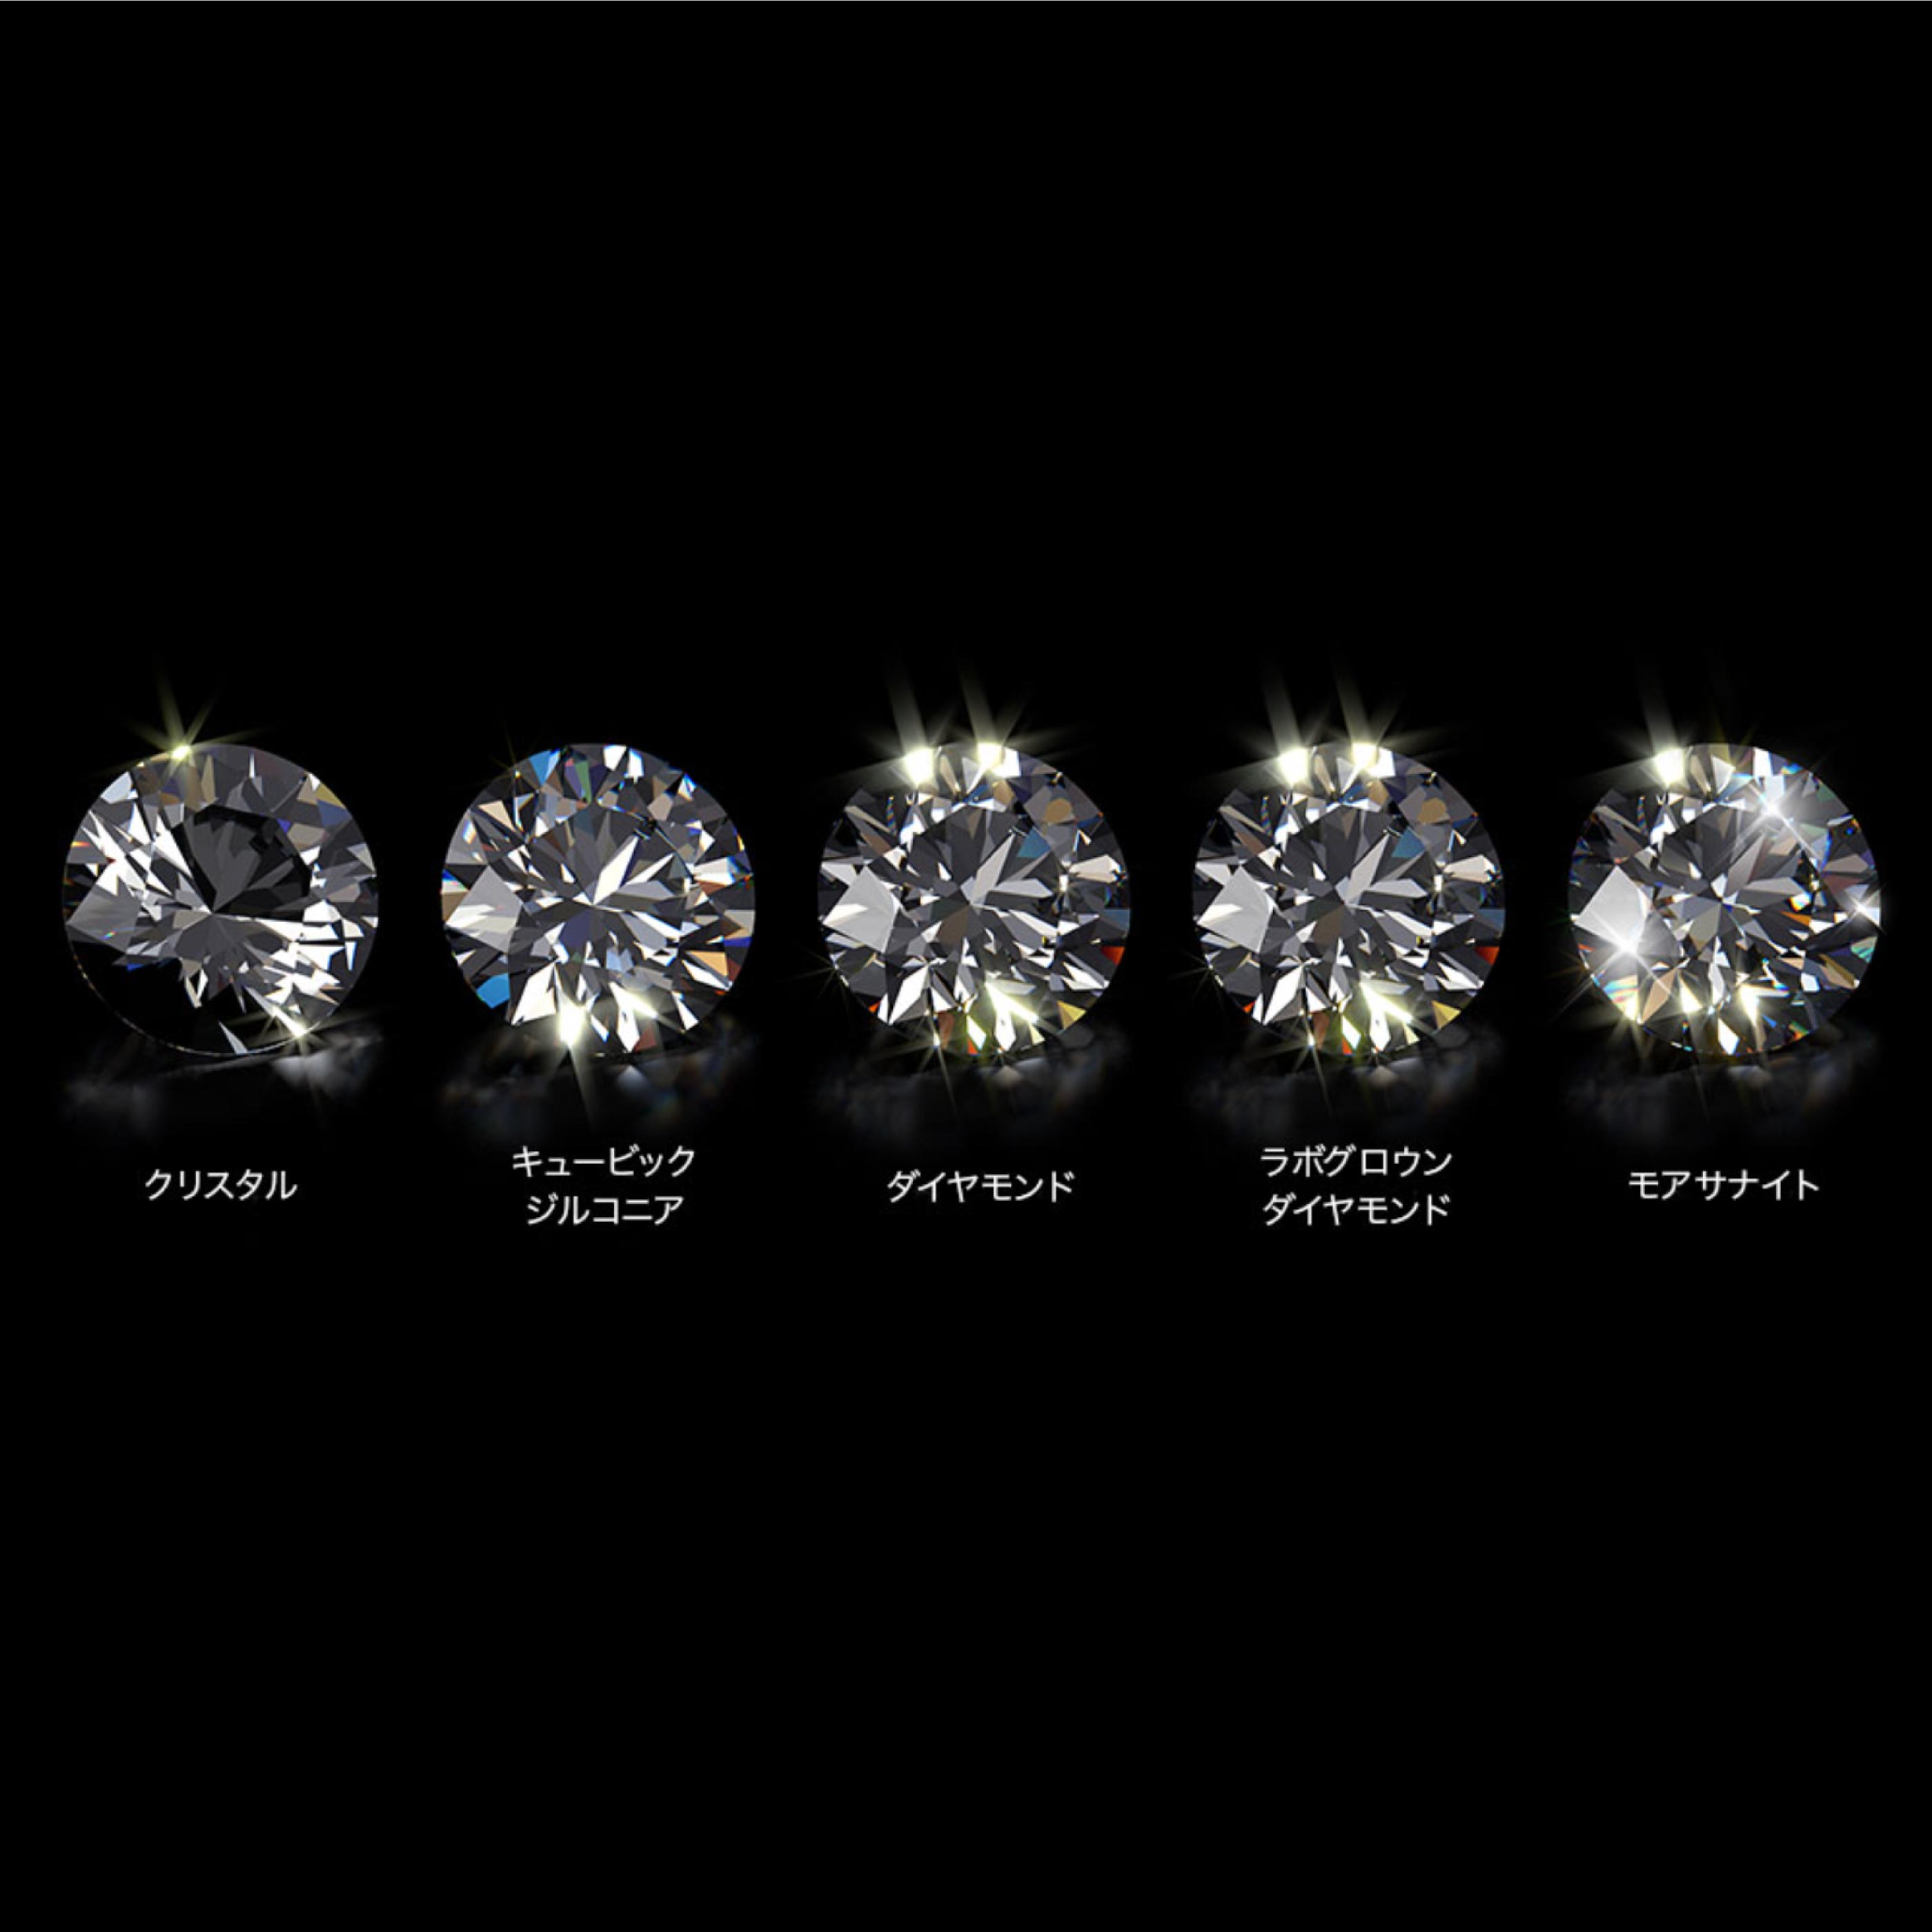 天然ダイヤモンド、人工ダイヤモンド、モアサナイトの違いとは – NEXT ...